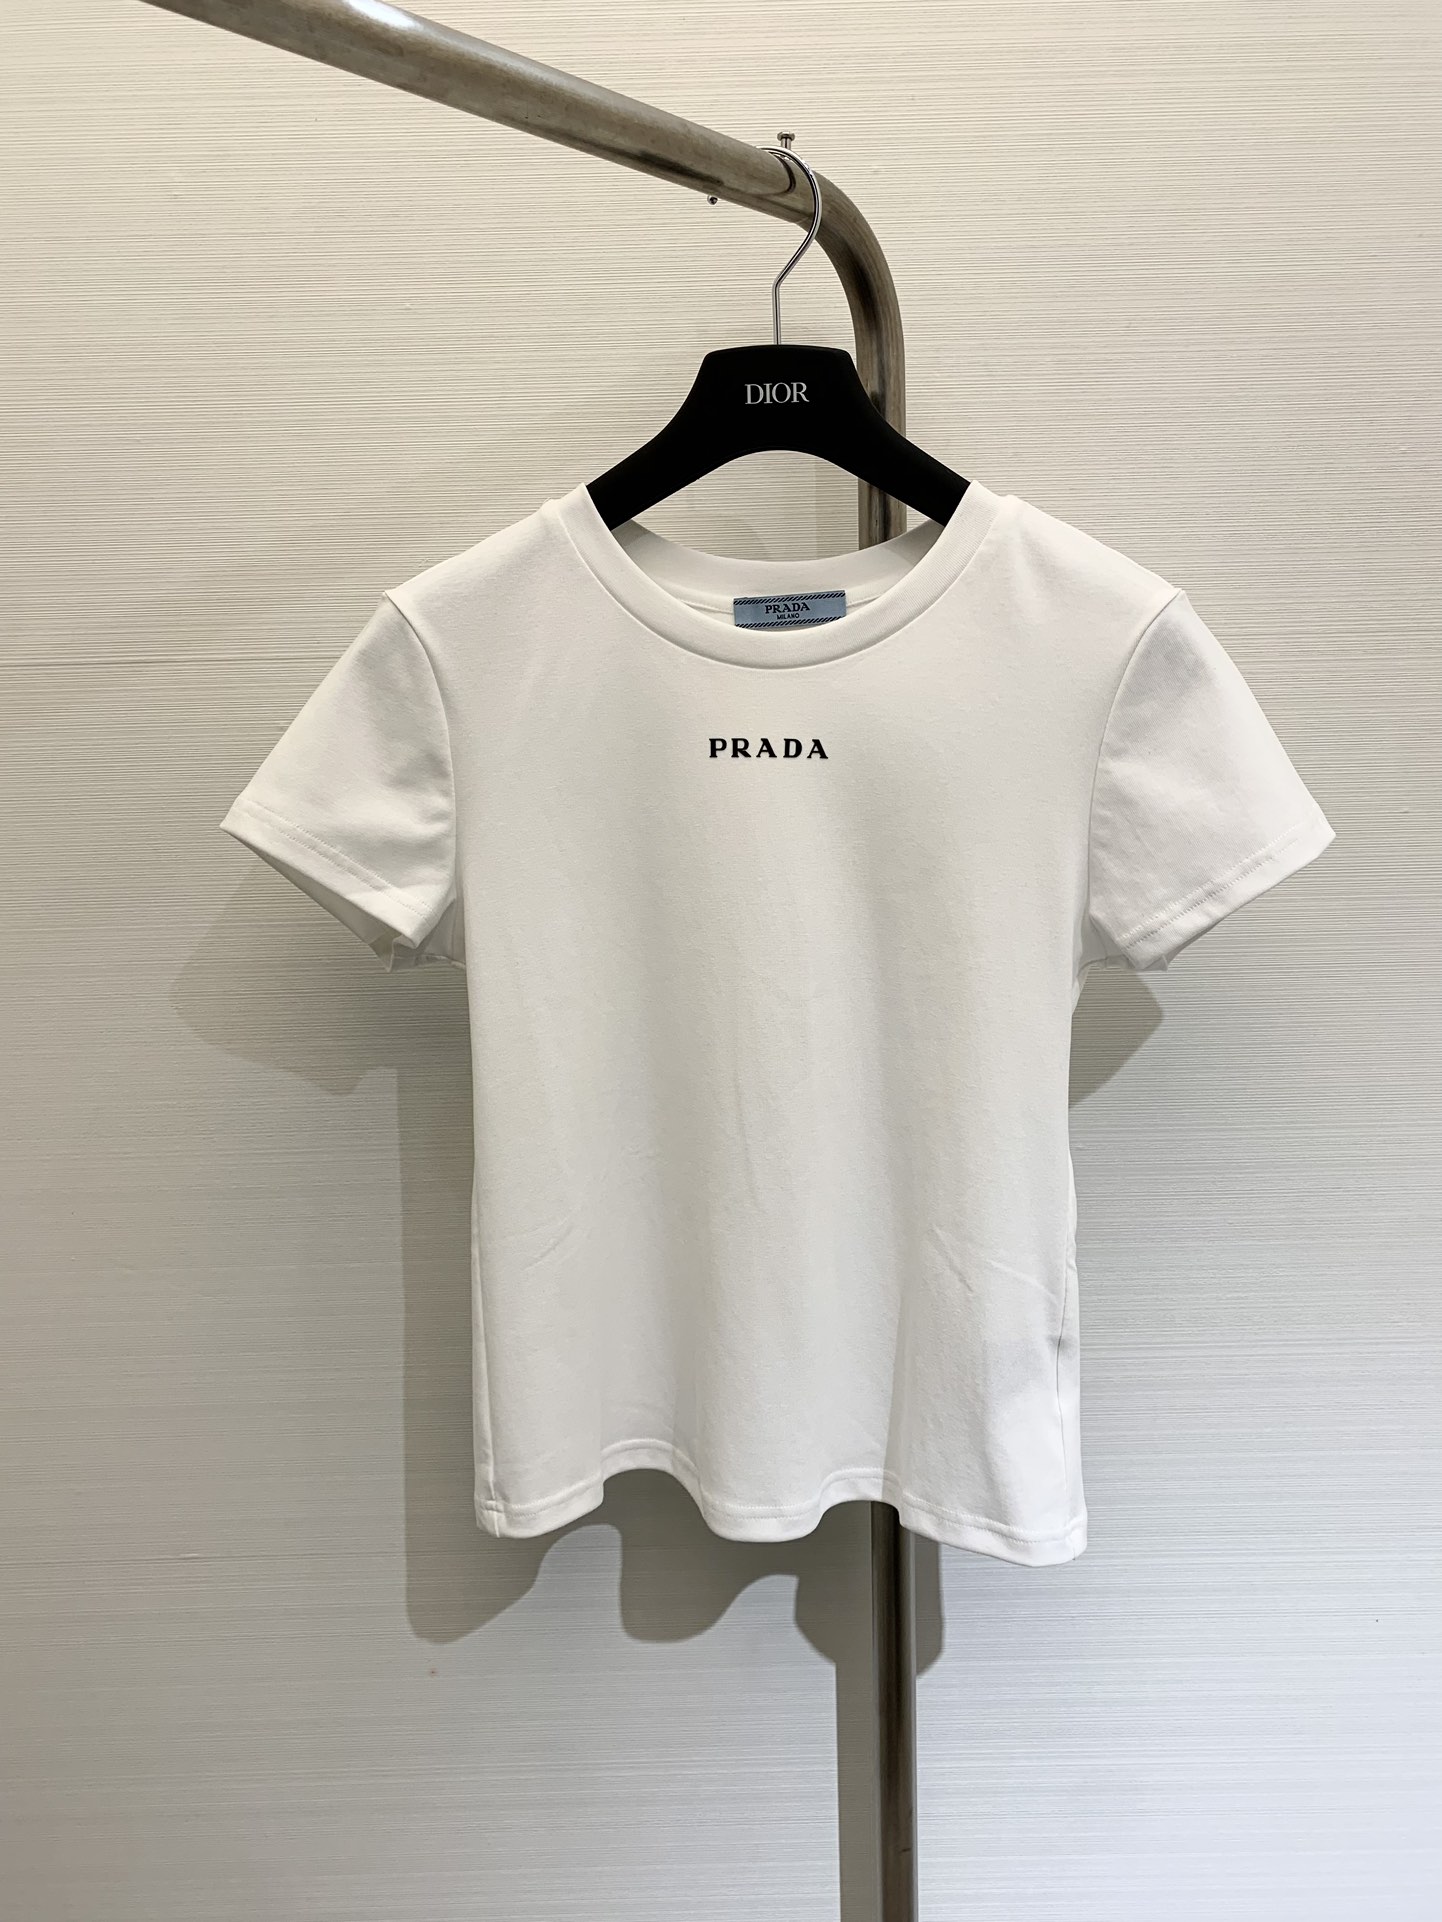 Prada Vêtements T-Shirt Noir Gris Blanc Série d’été Peu importe